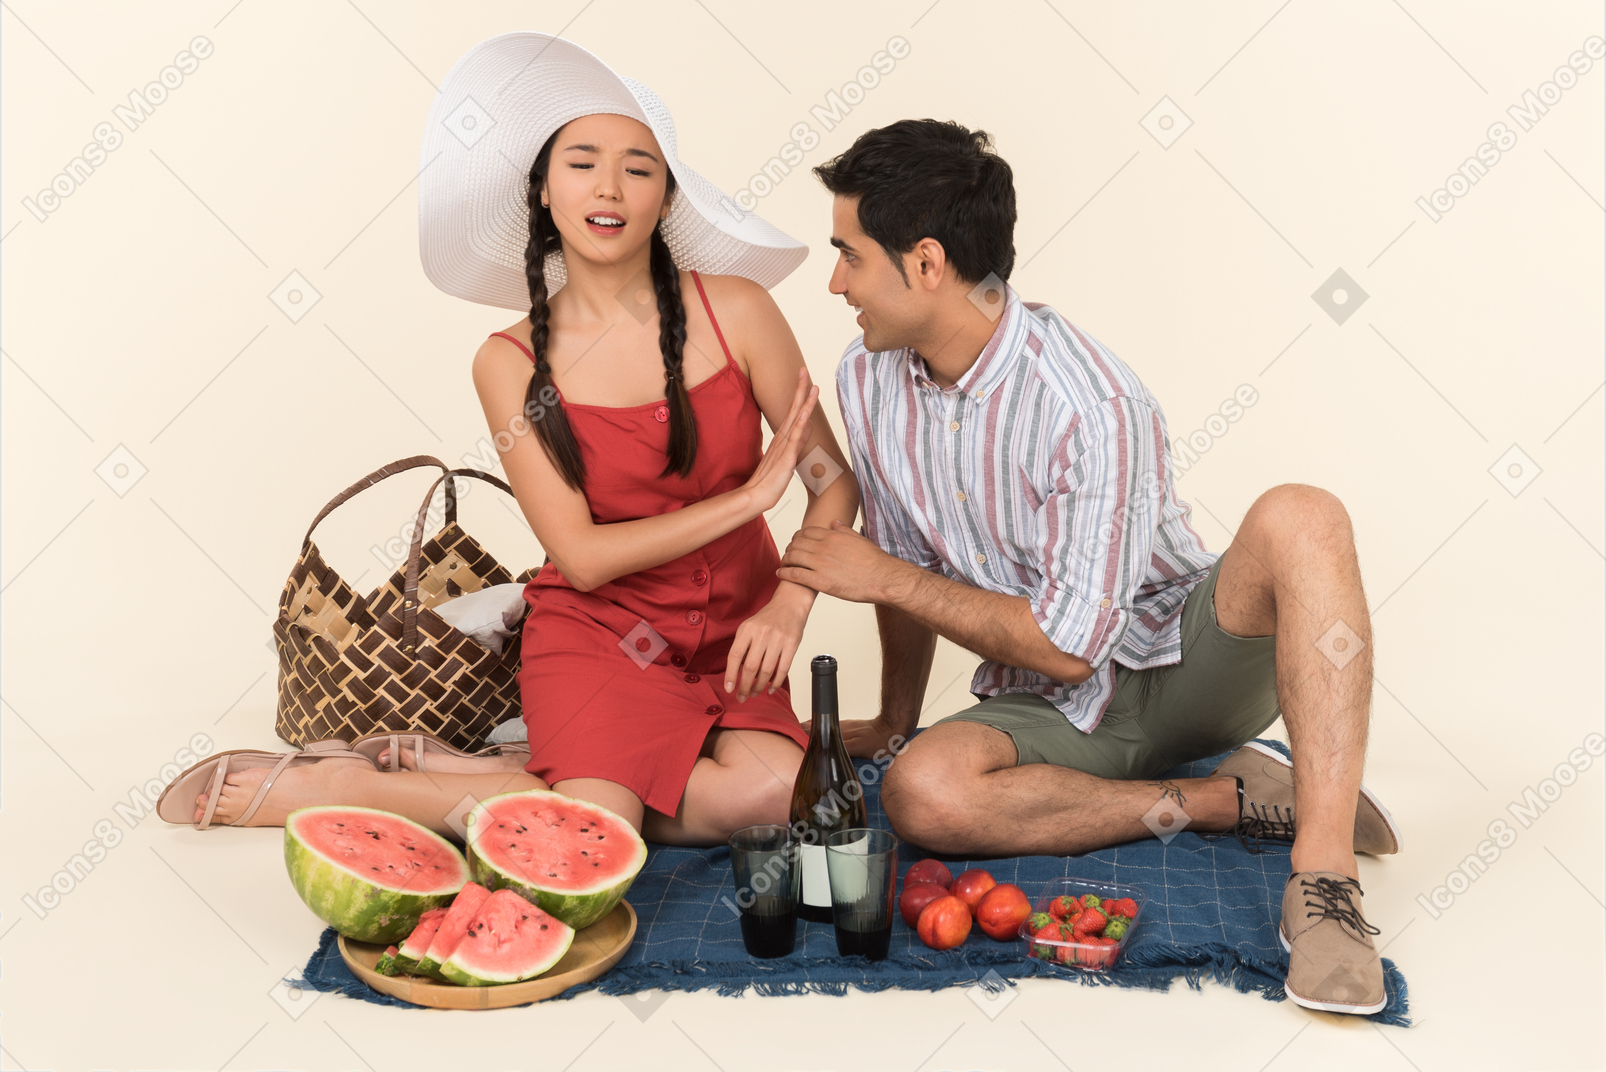 La giovane coppia interrazziale che fa picnic e la giovane donna sembra non gradire qualcosa